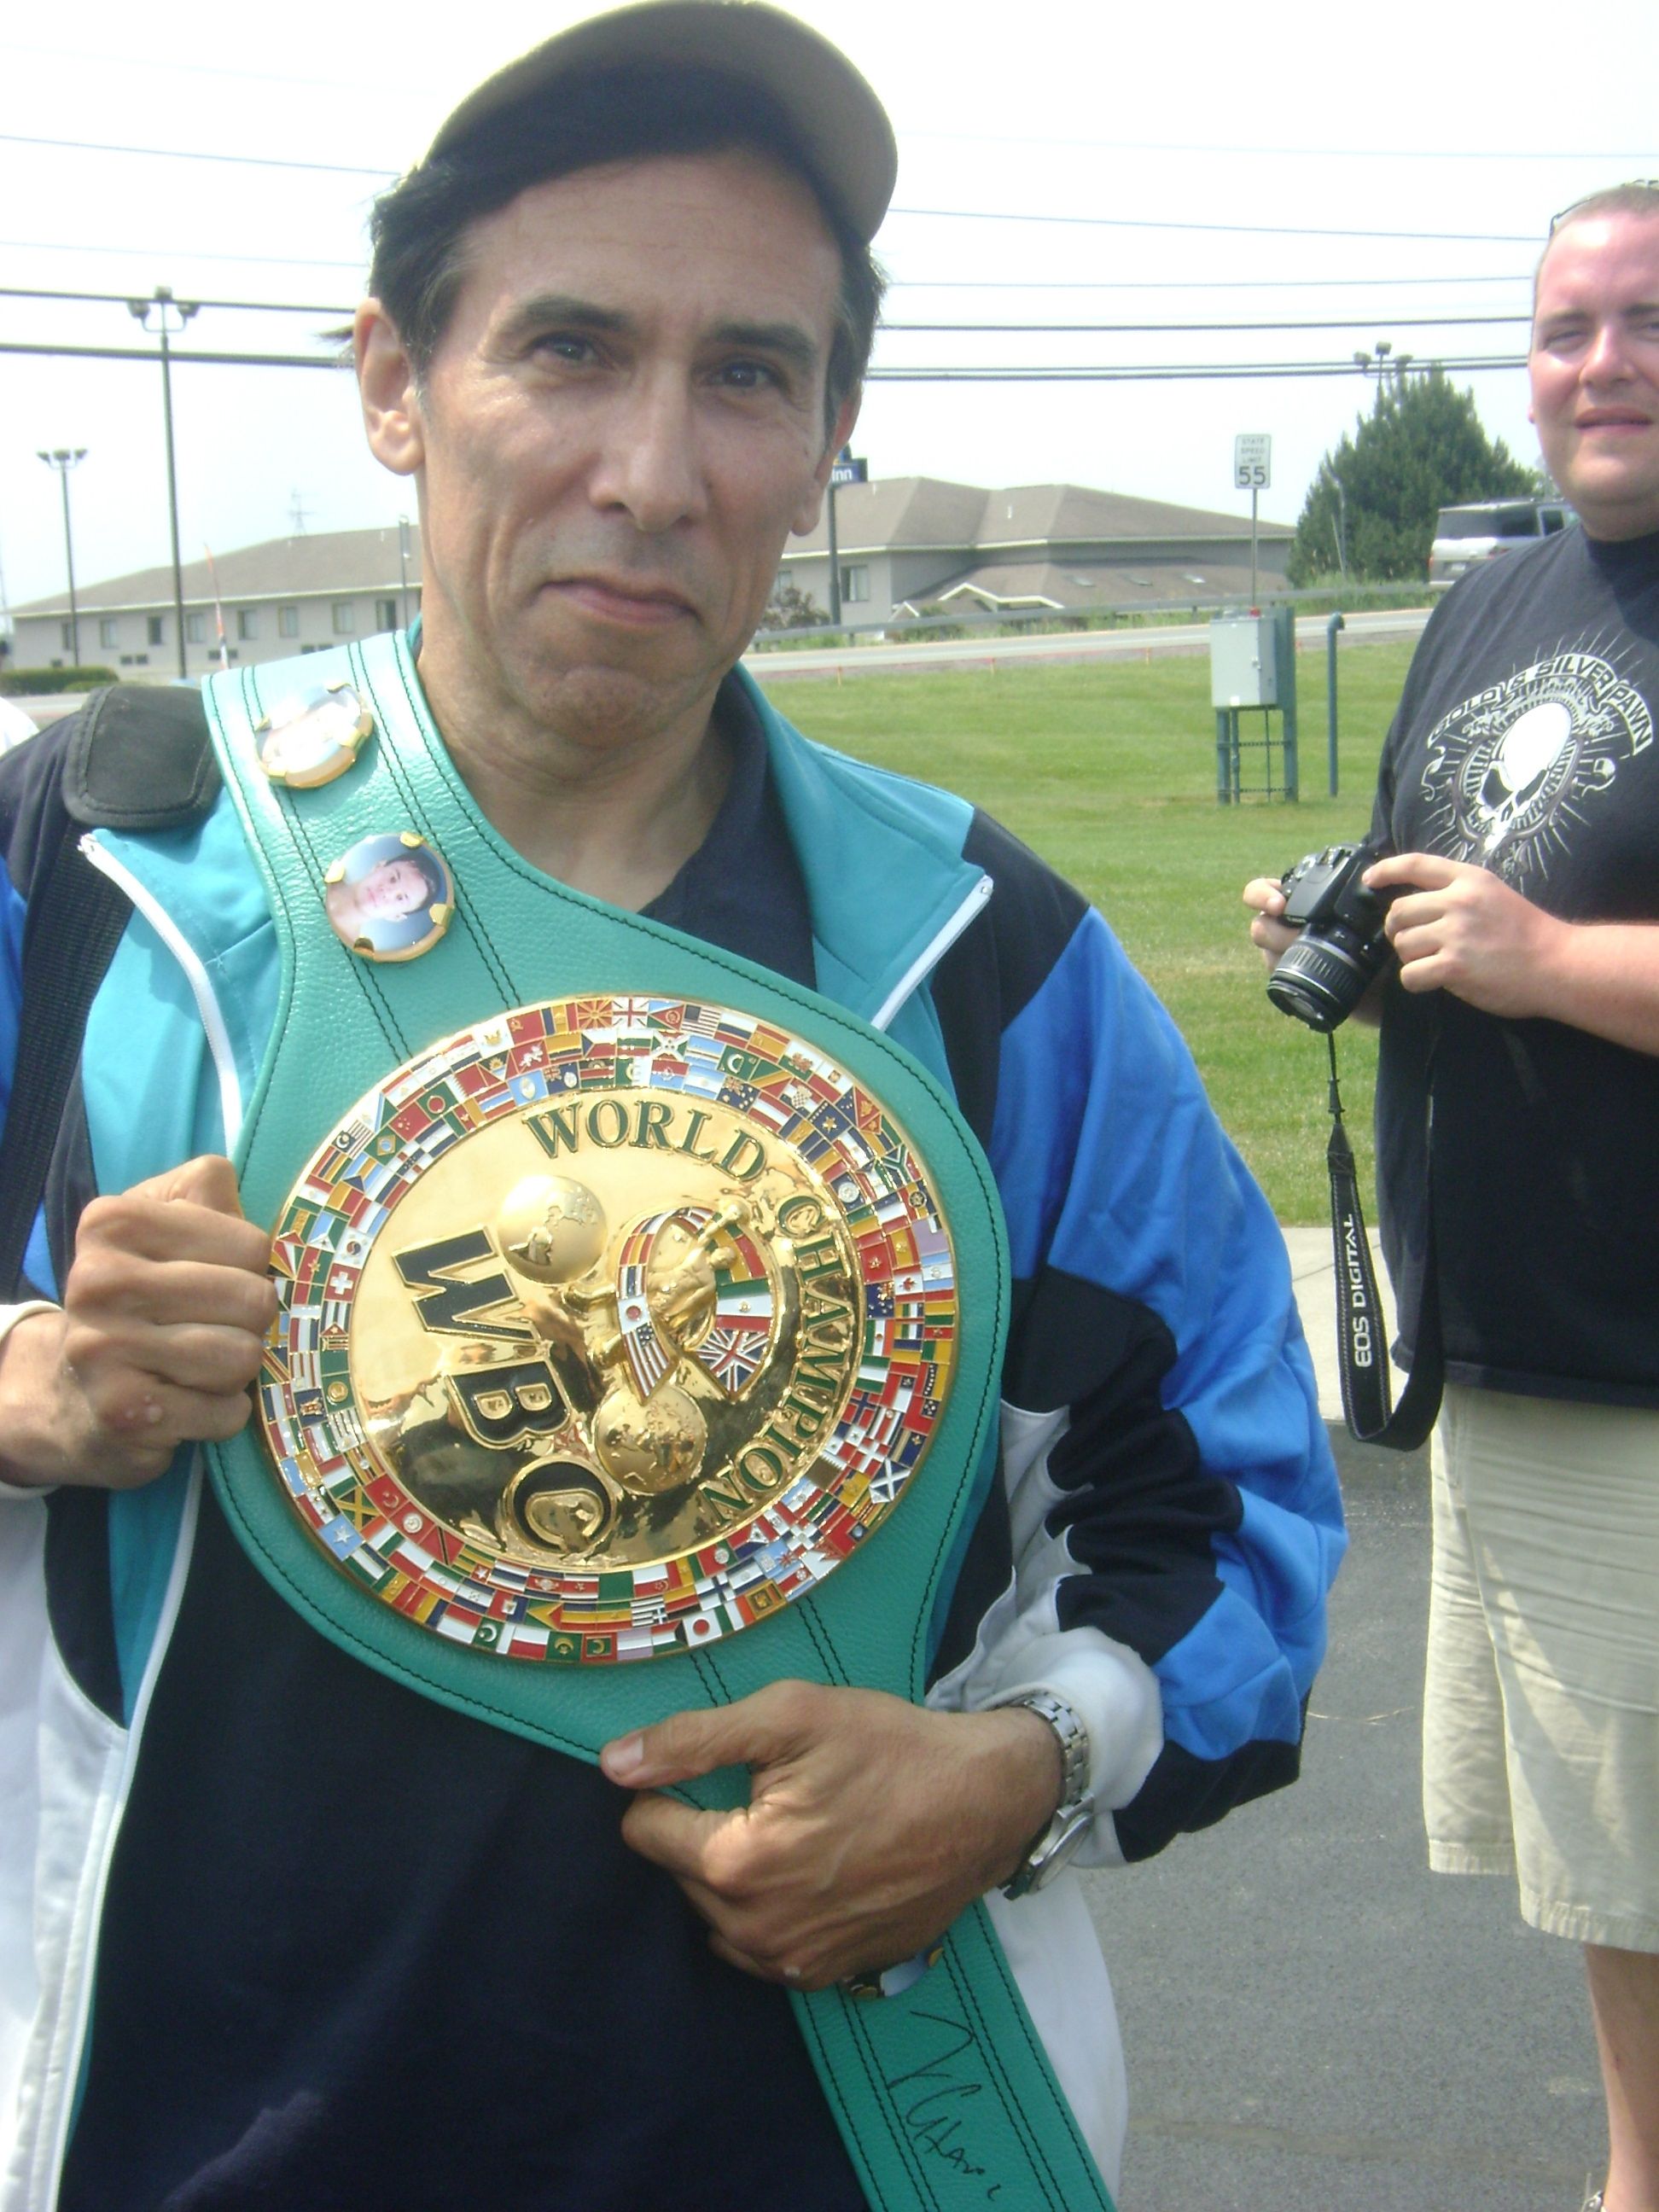 Fan posing with title belt